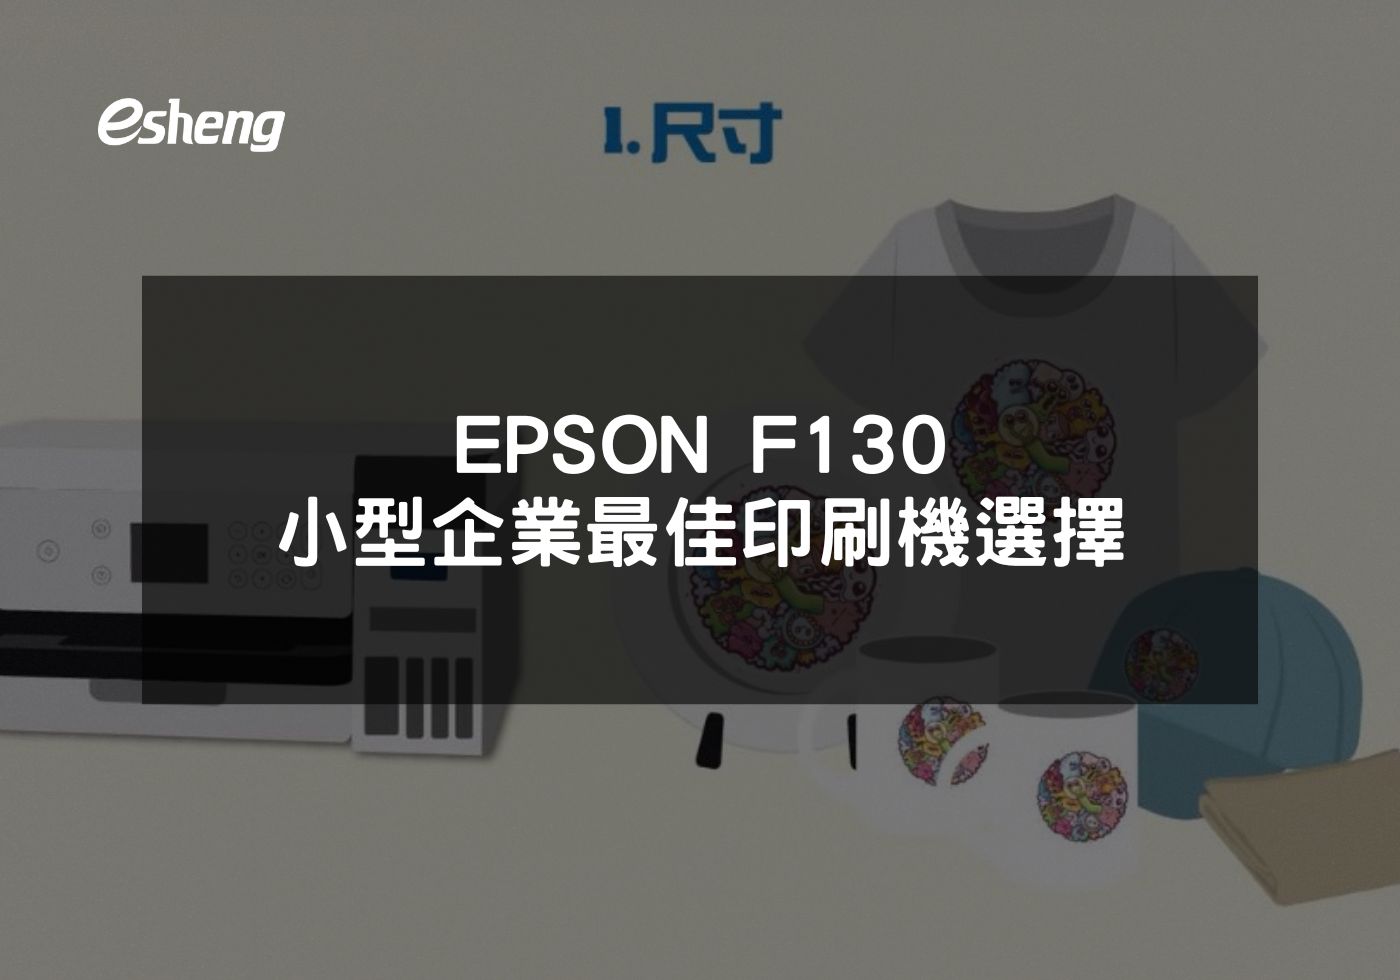 閱讀更多文章 EPSON F130 小型企業最佳印刷機選擇